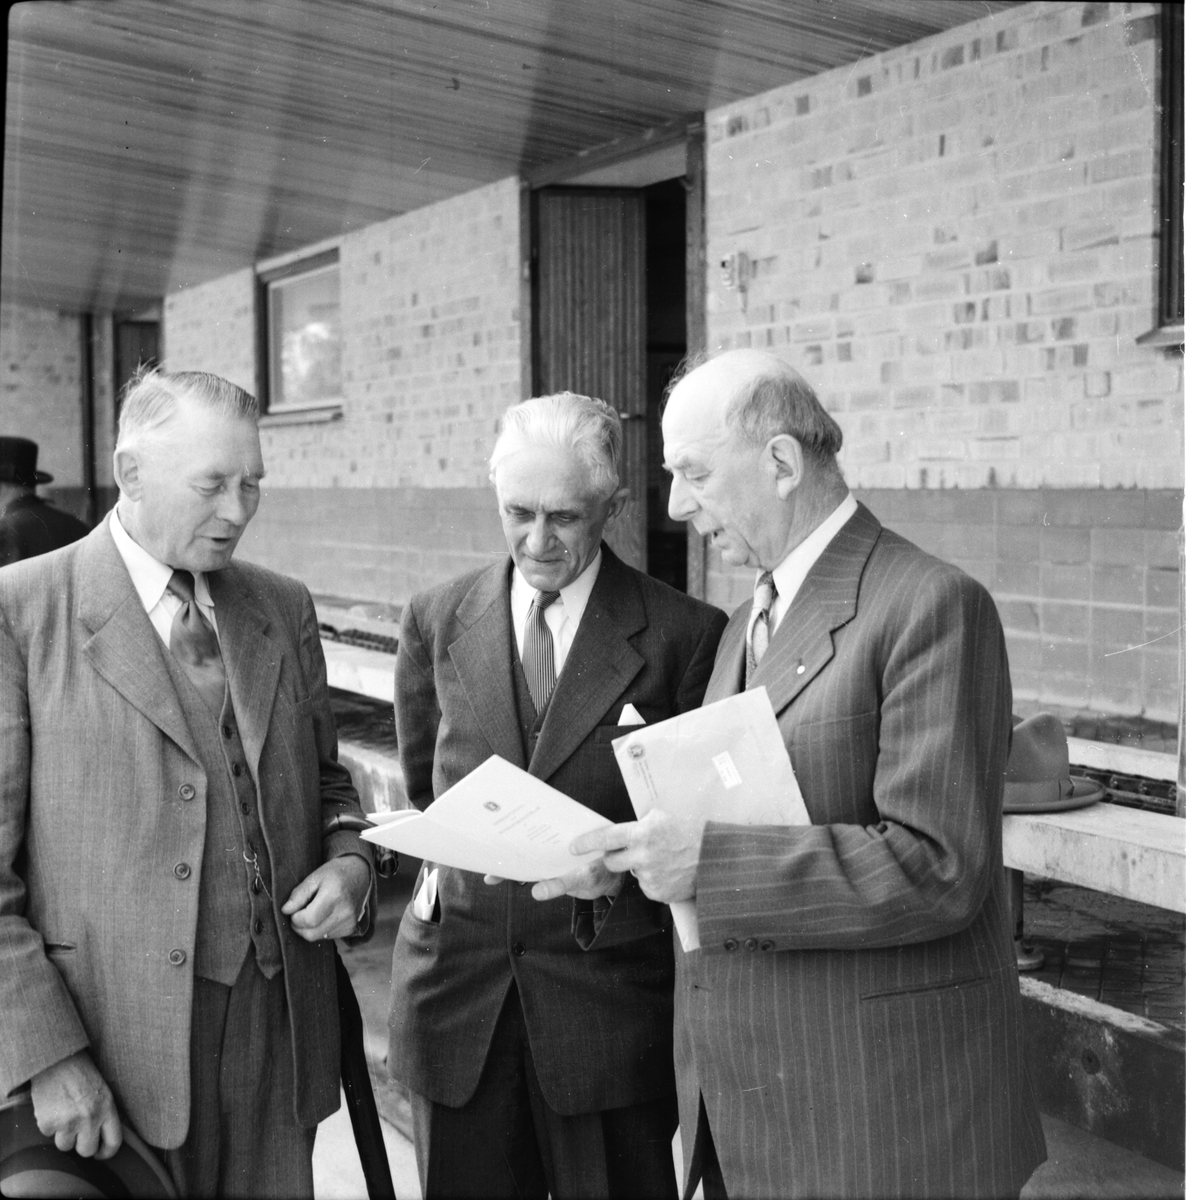 Mejeriföreningen,
P. Perzon, Sv. Häger,m.fl.
Besök på mejeriet,
1953